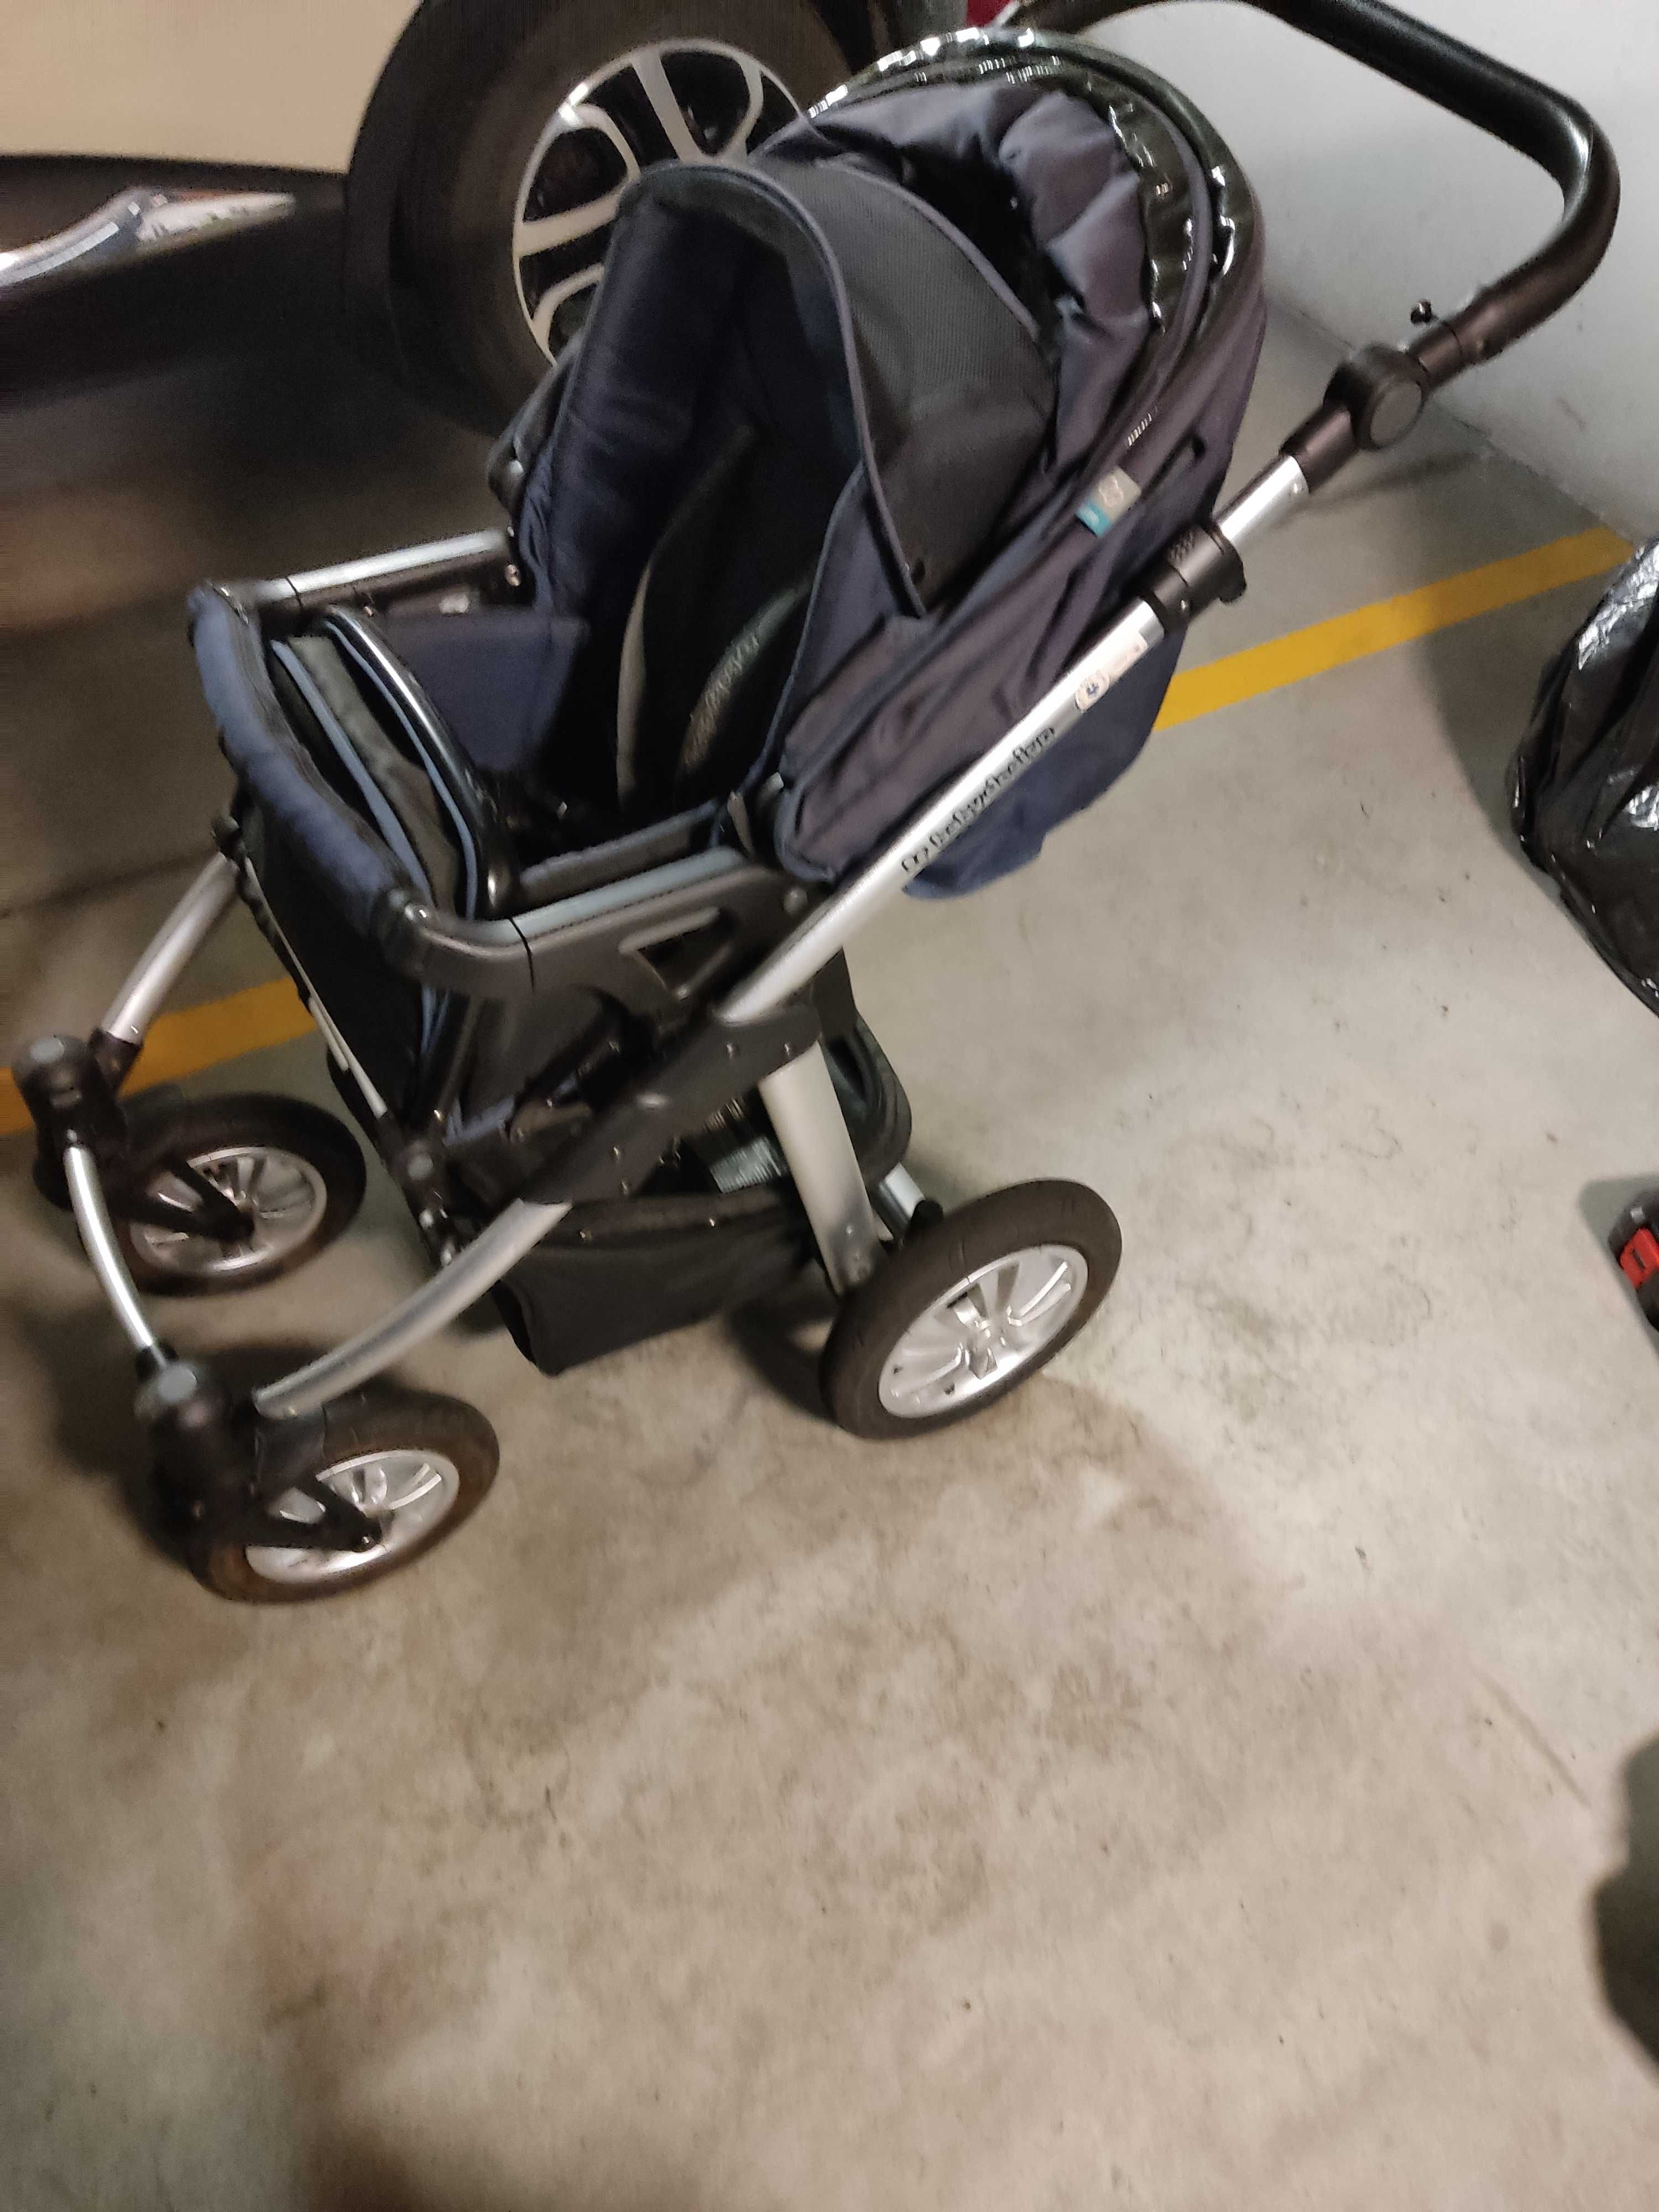 Sprzedam wózek Baby design